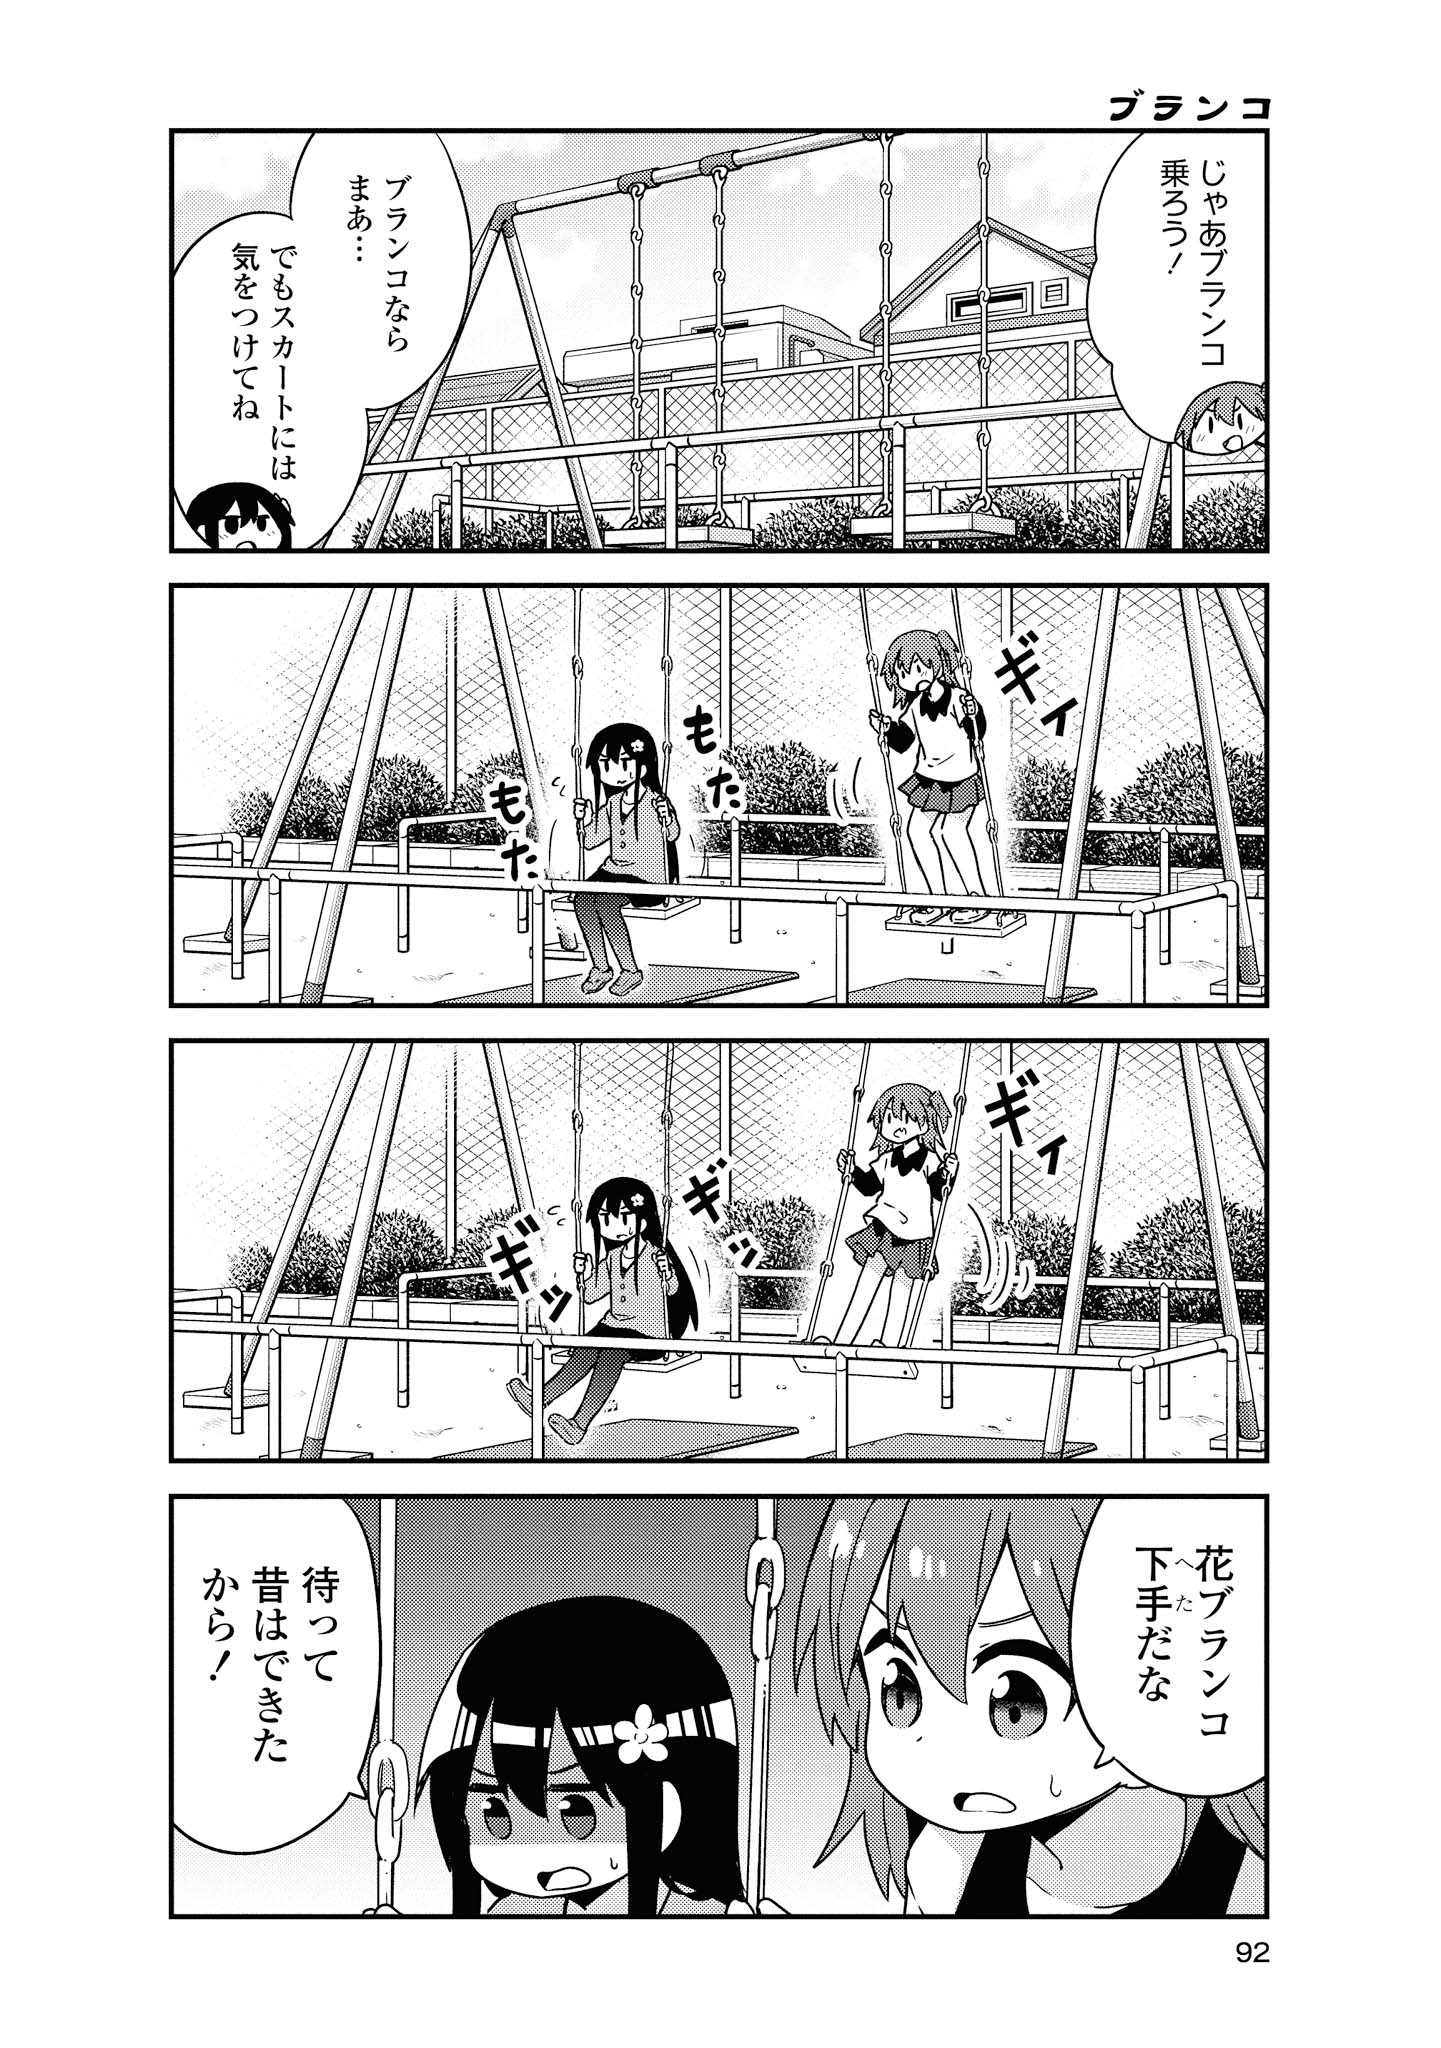 Watashi ni Tenshi ga Maiorita! - Chapter 49 - Page 4